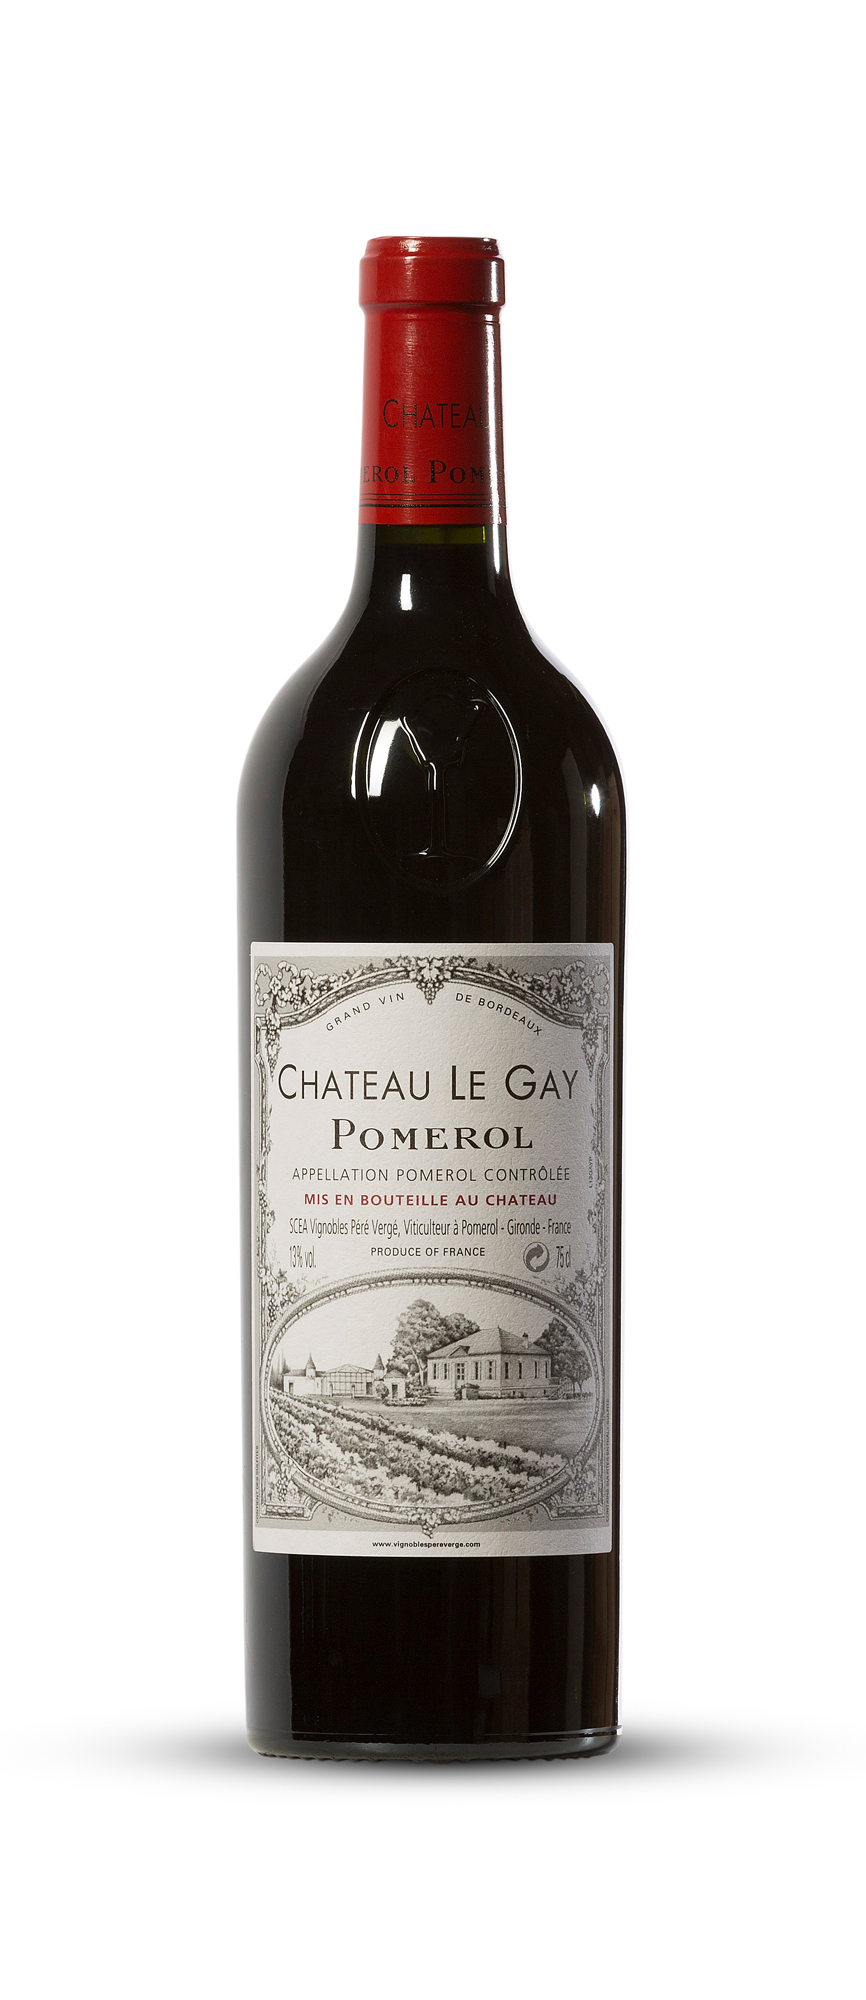 2014 Chateau Le Gay, Pomerol